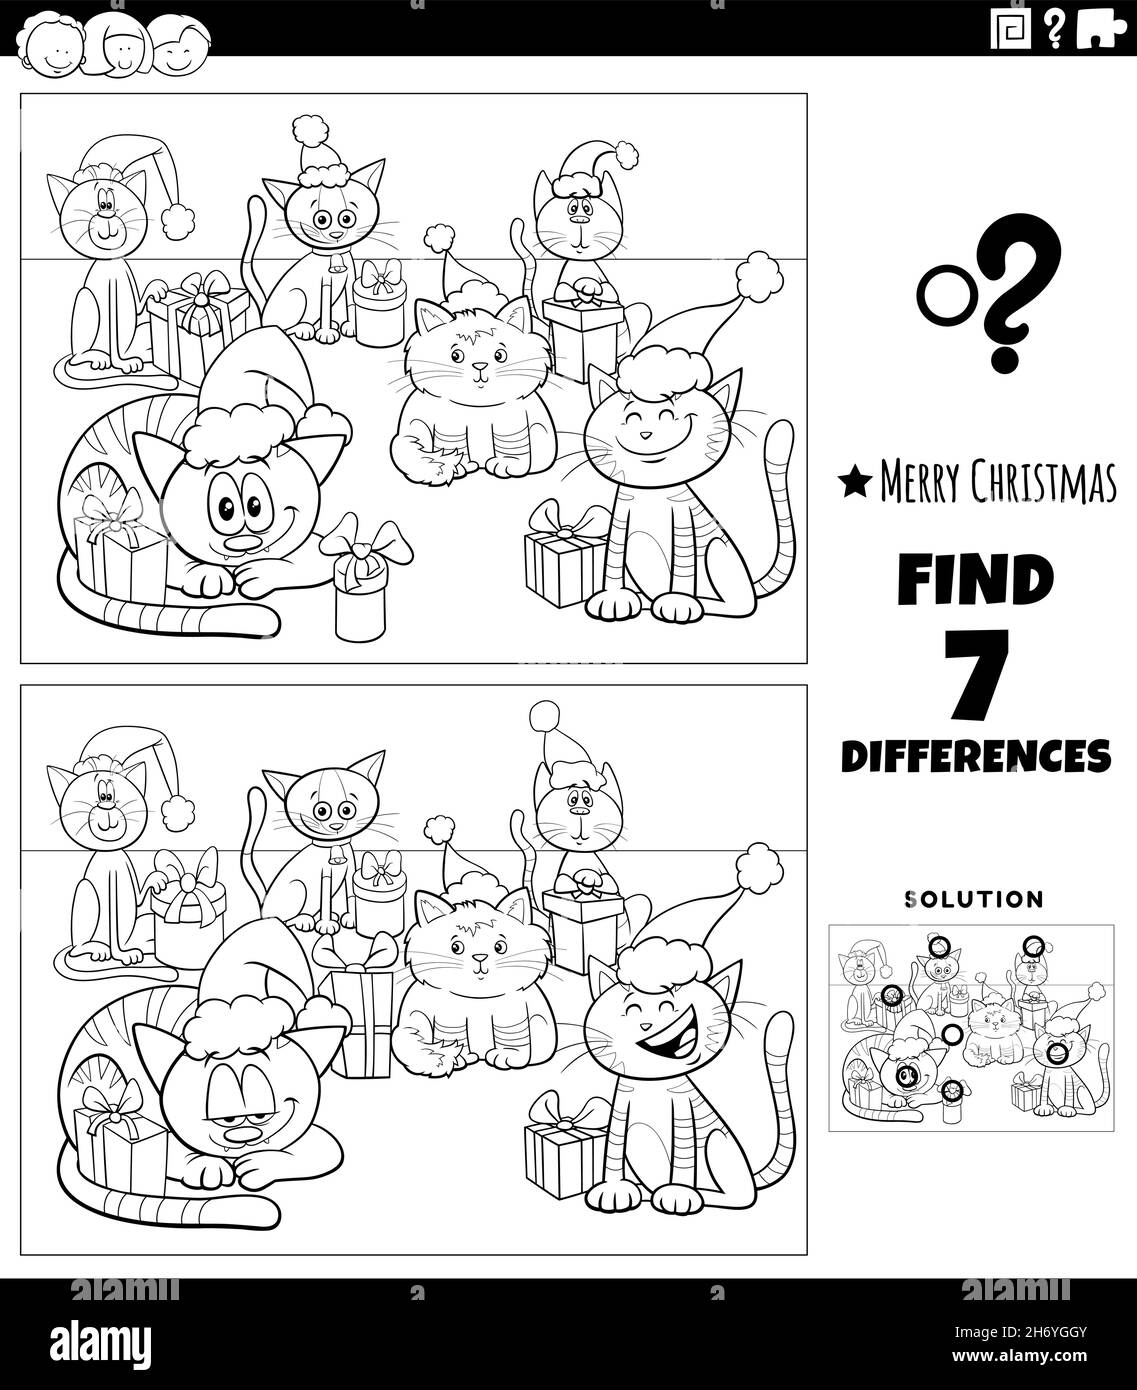 Schwarz-Weiß-Cartoon-Illustration der Suche nach Unterschieden zwischen Bildern Lernspiel für Kinder mit lustigen Katzen Charaktere auf Weihnachten tim Stock Vektor